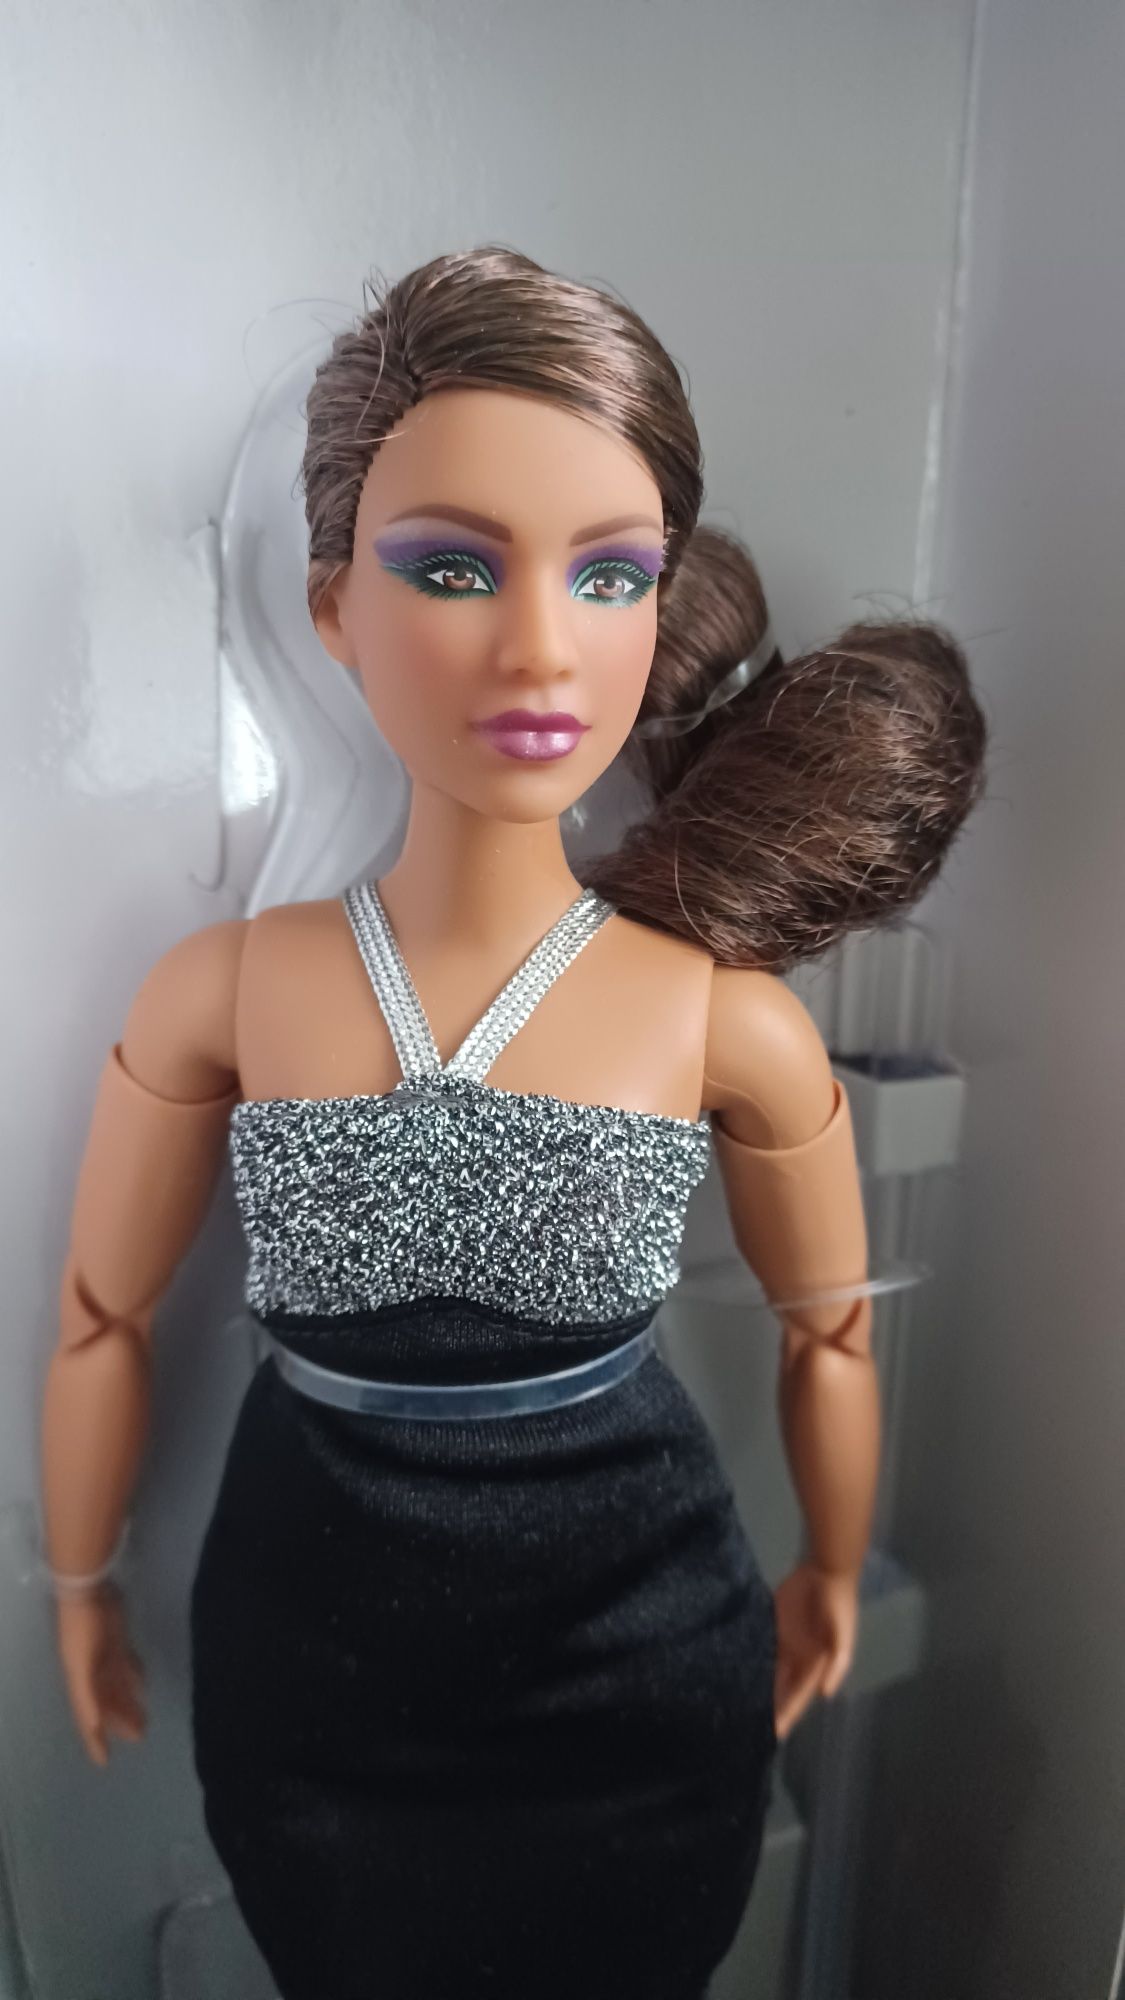 Lalka Barbie Signature Looks 12 Doll NIB kolekcjonerska mattel
Lalka B